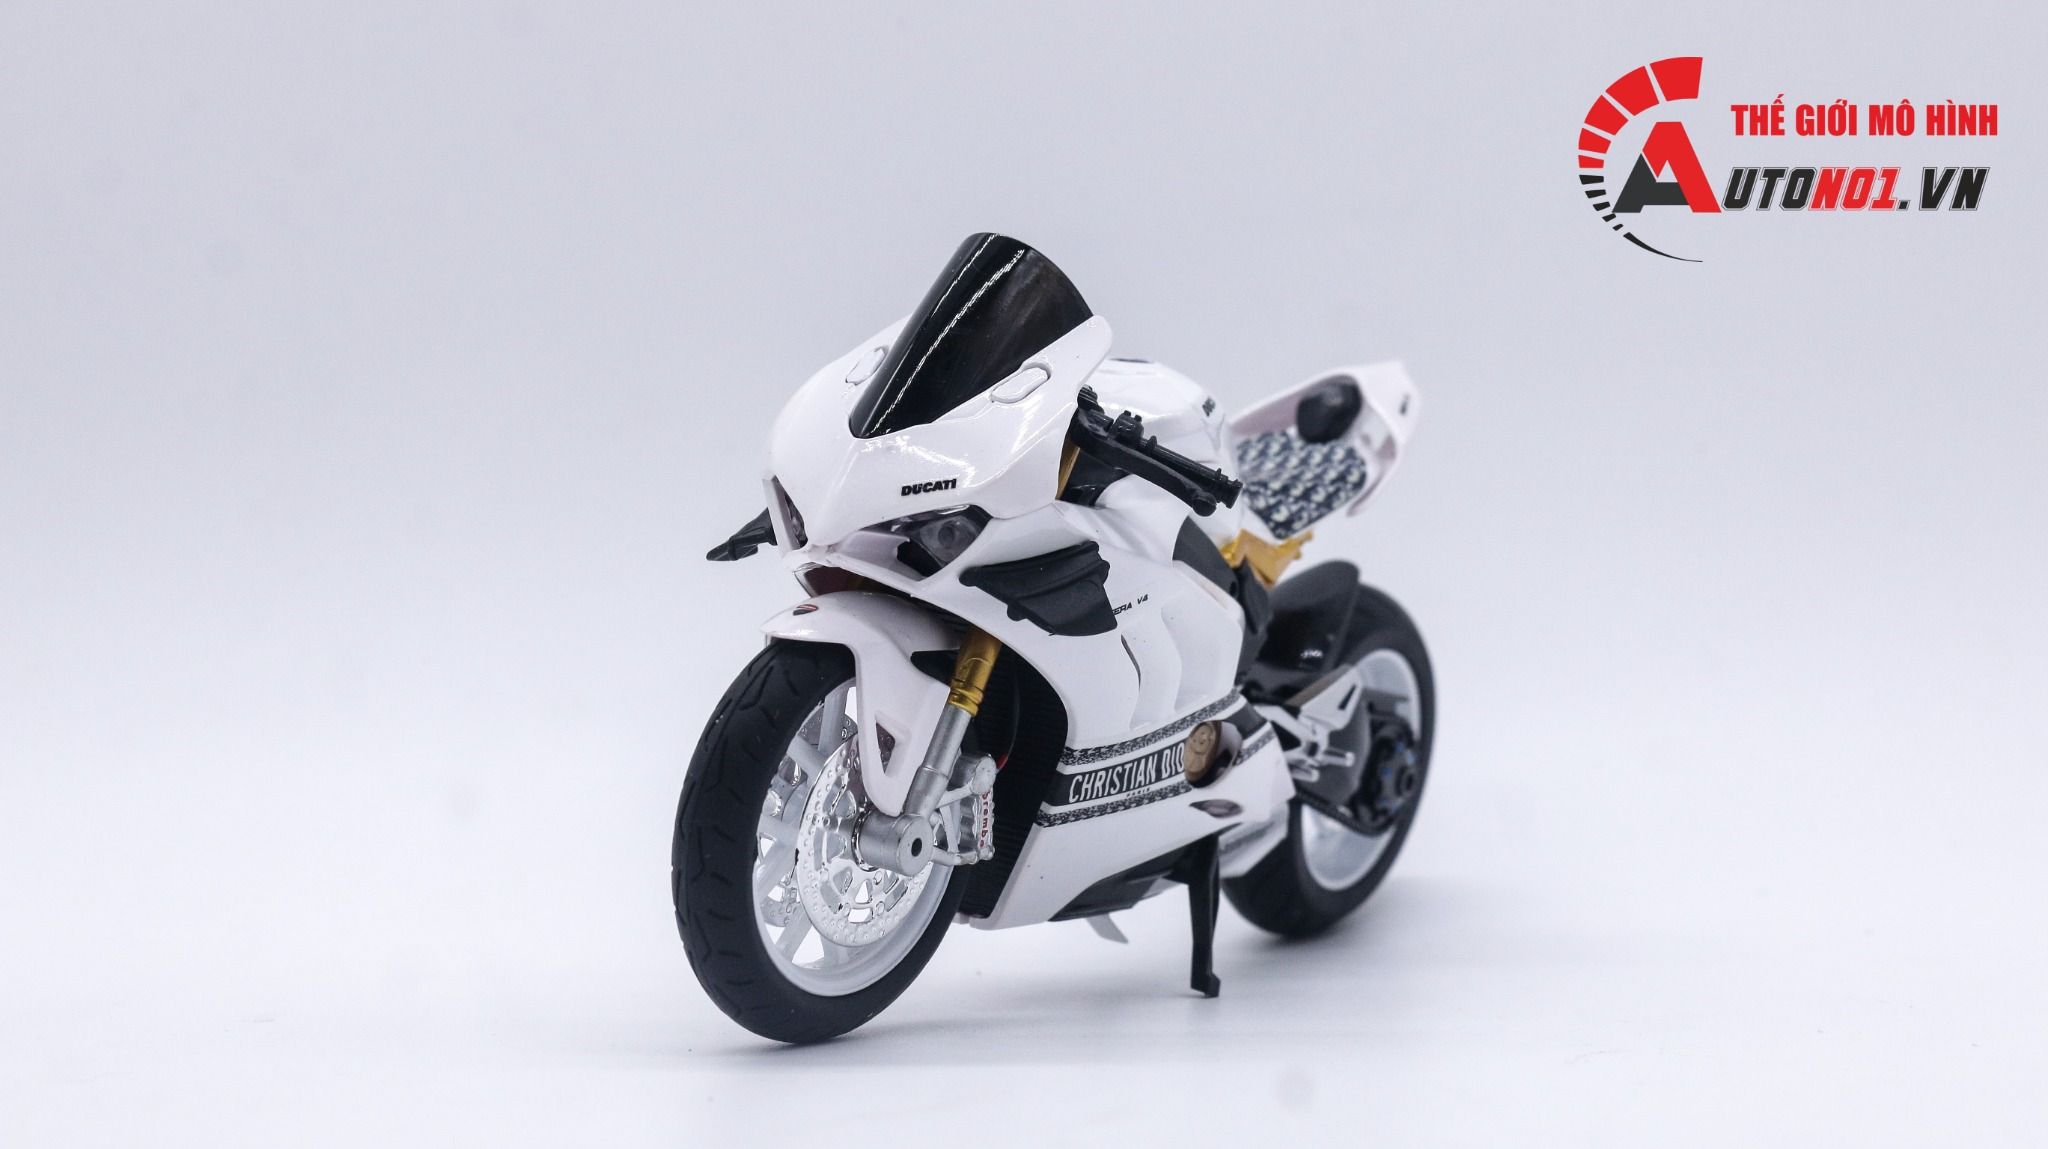  Mô hình xe độ Ducati V4 custom Christian Dior độ nồi khô tỉ lệ 1:12 Autono1 Alloy D223P 